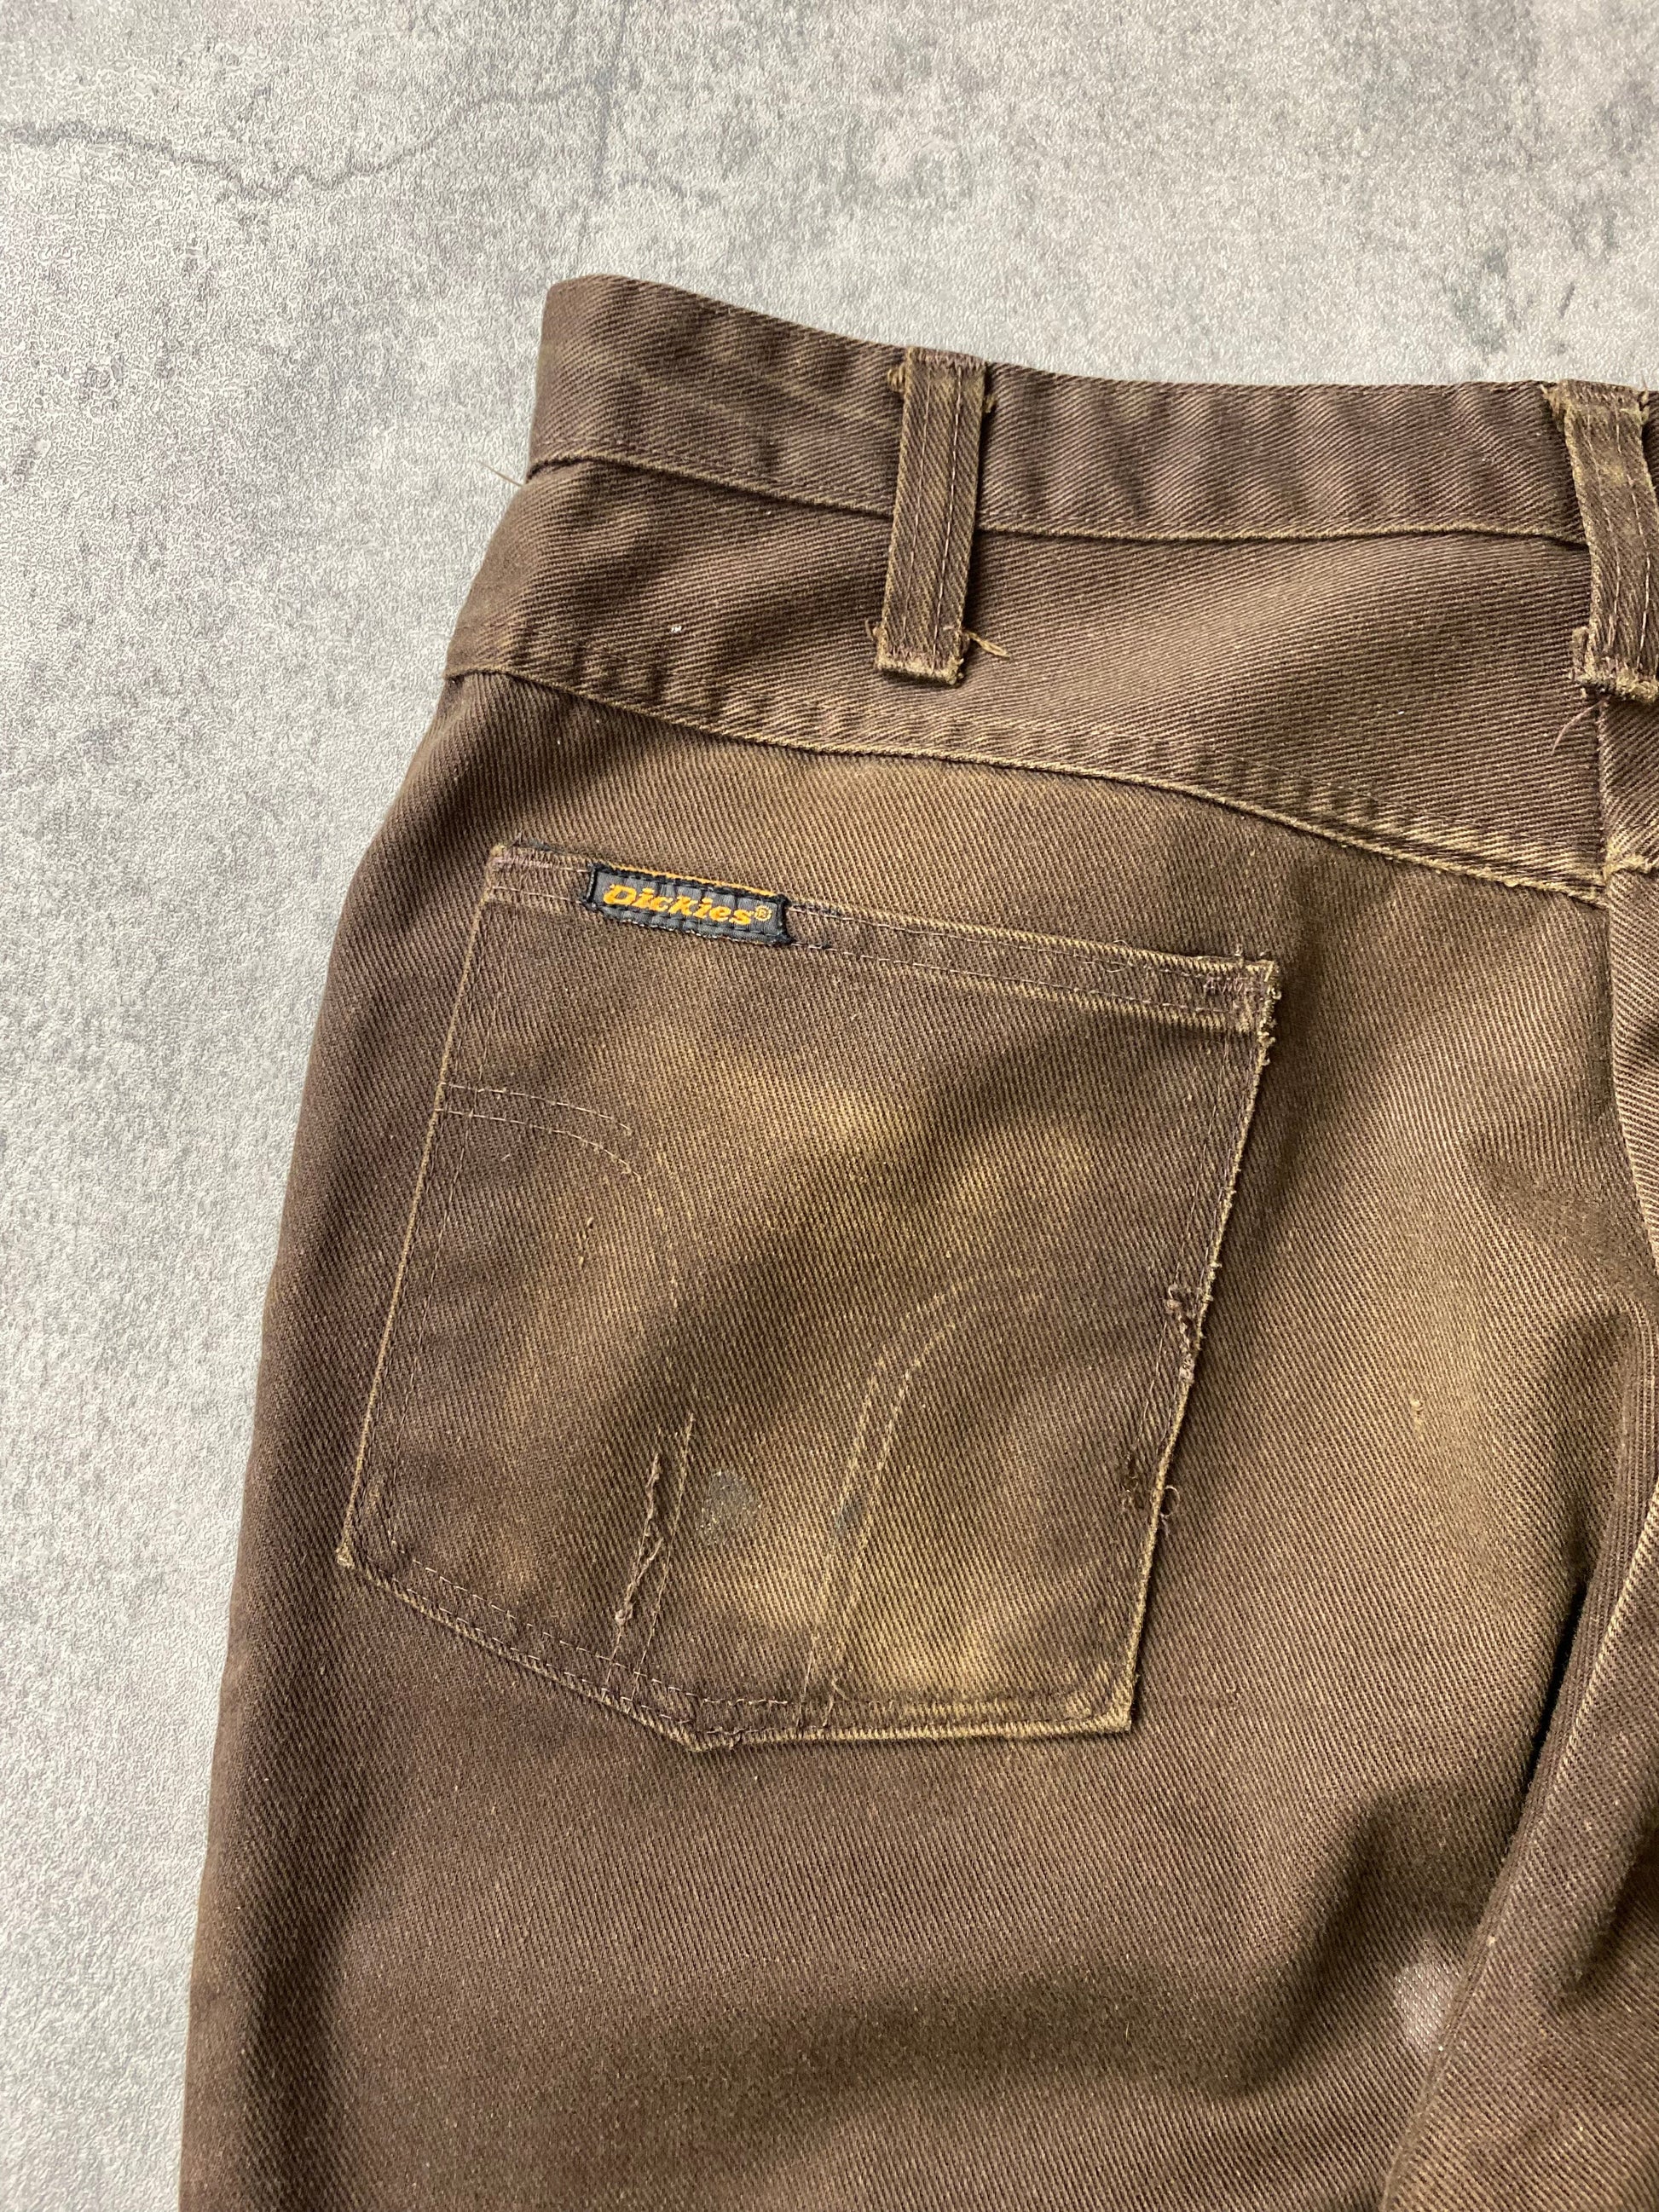 Dickies Pants Vintage Dickies Pants Mens 31 x 31 Brown 70s 80s Trousers